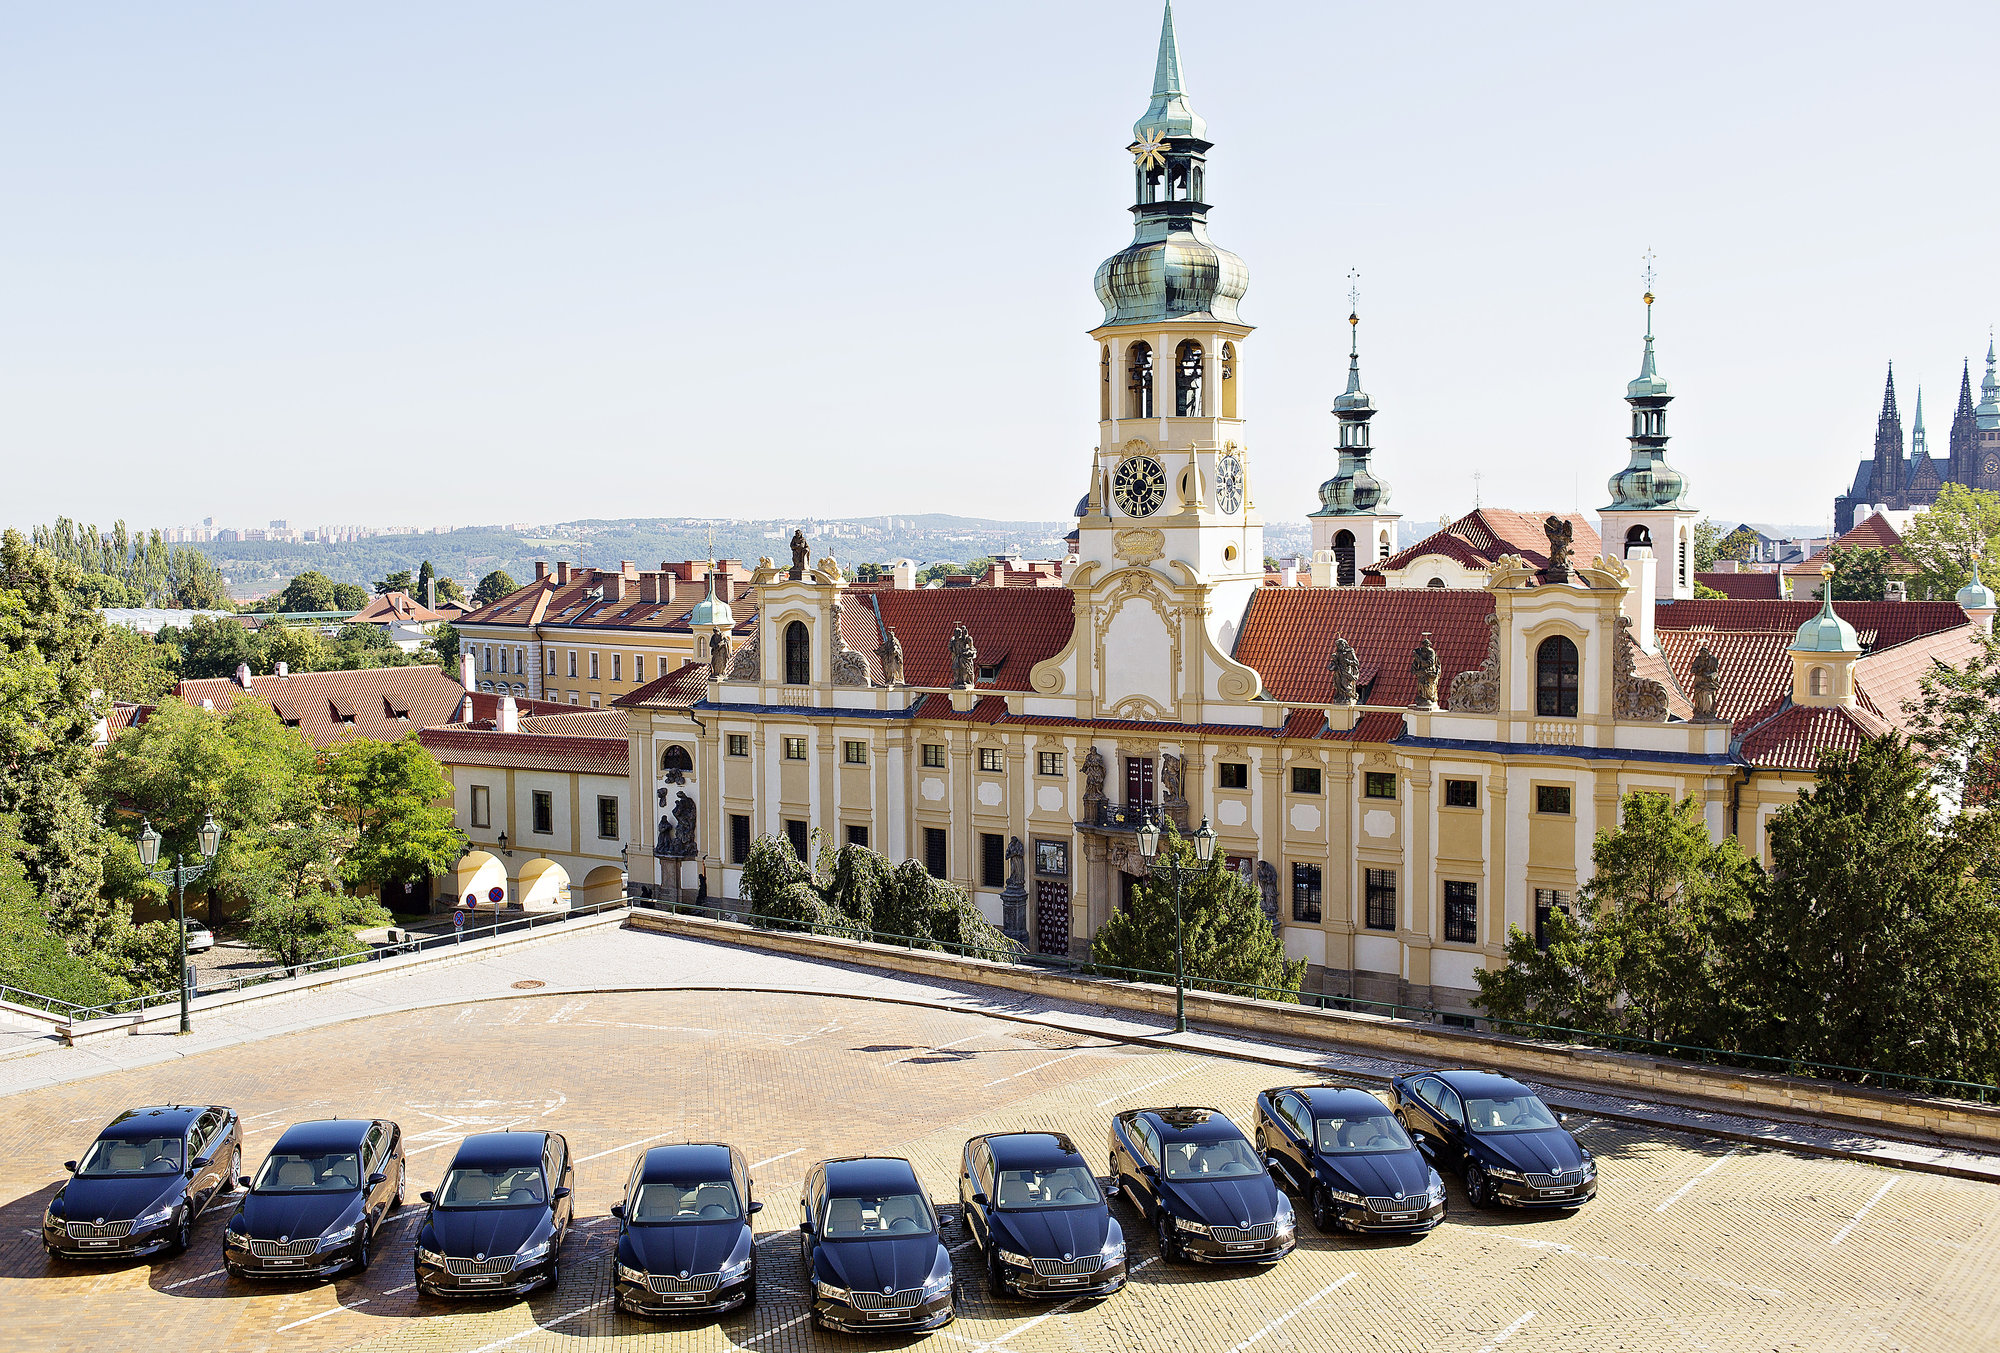 vozy Škoda Superb dostali nedávno i čeští velvyslanci